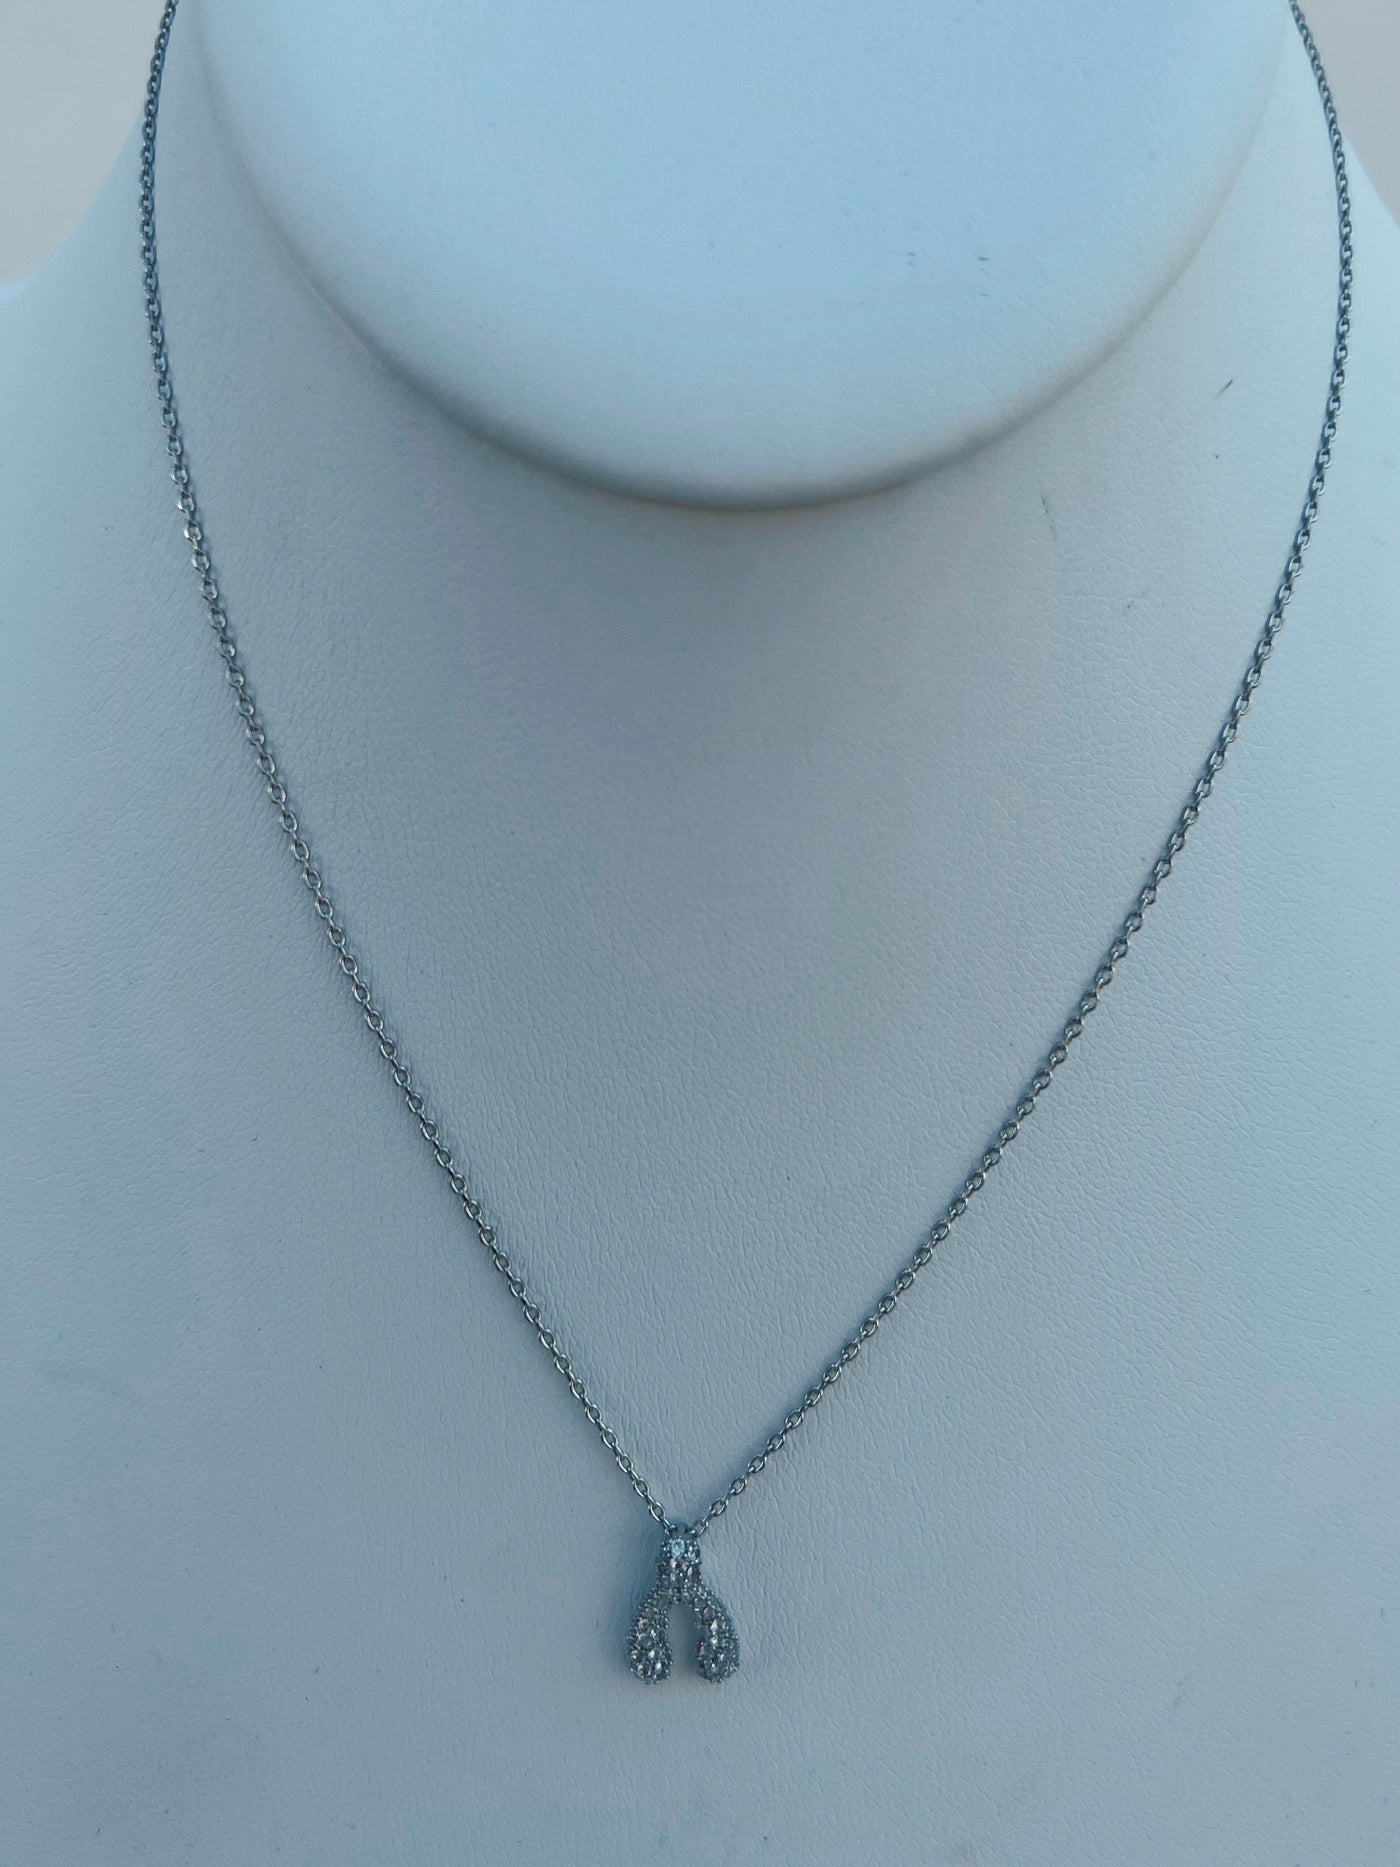 Wish Away - Wishbone Charm Necklace